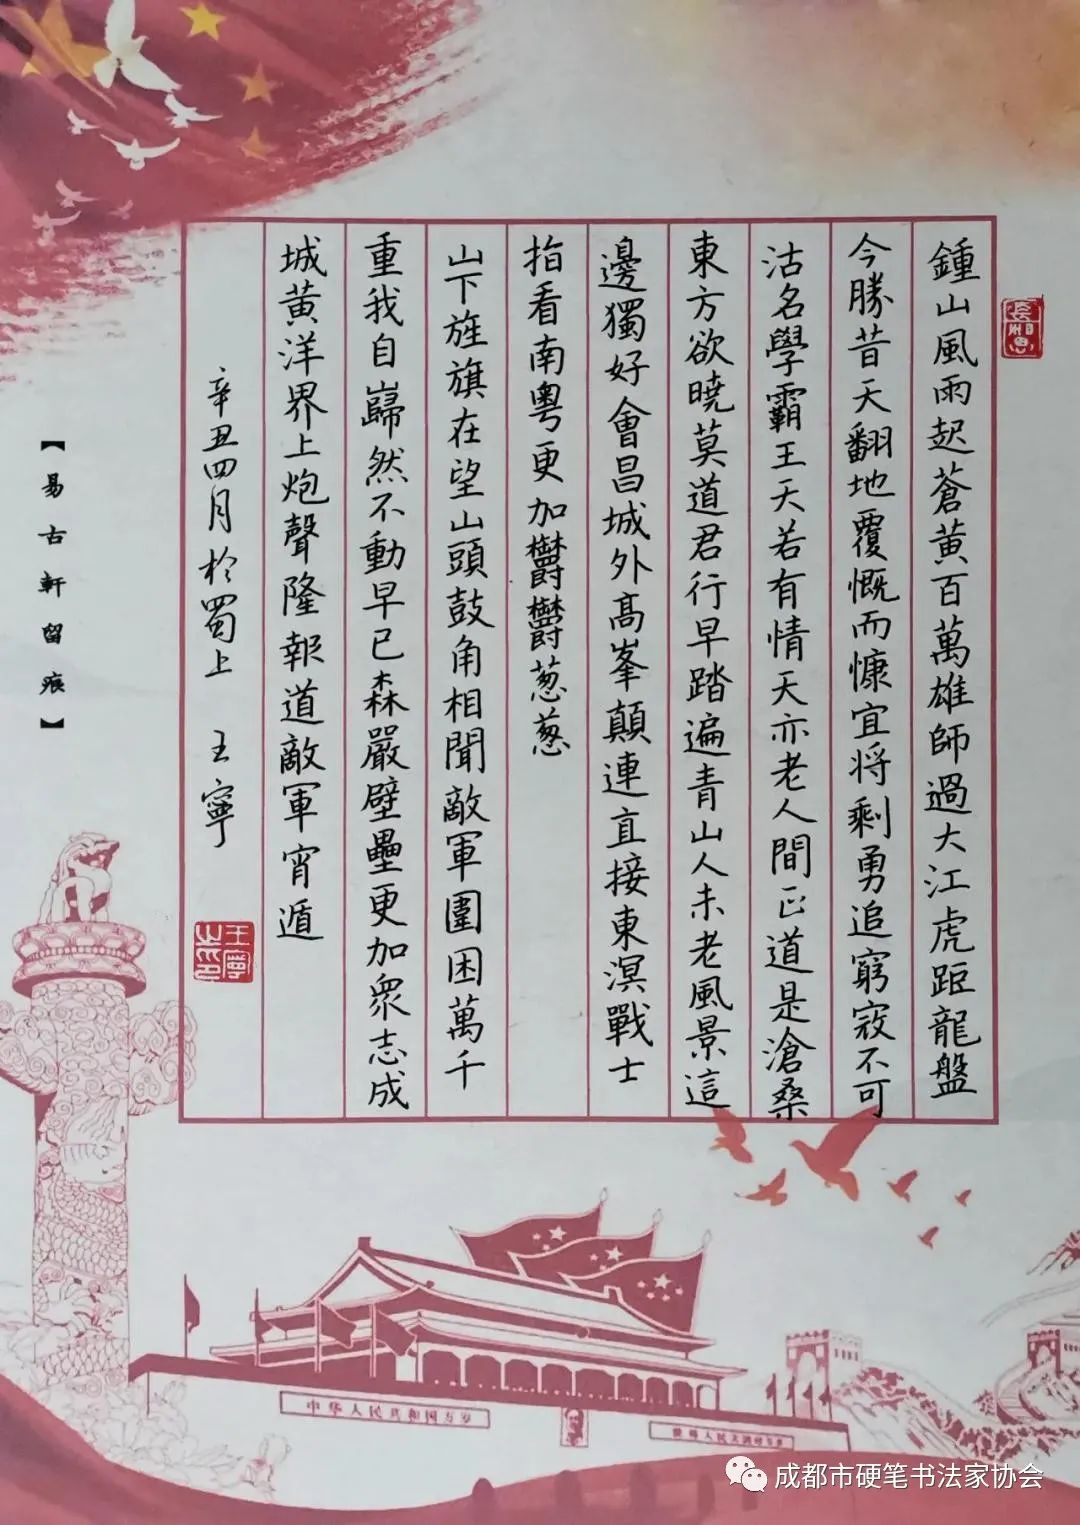 庆祝中国共产党成立100周年 “ 迎百年庆典 抒世纪辉煌 ” ——成都市硬笔书法作品网络展